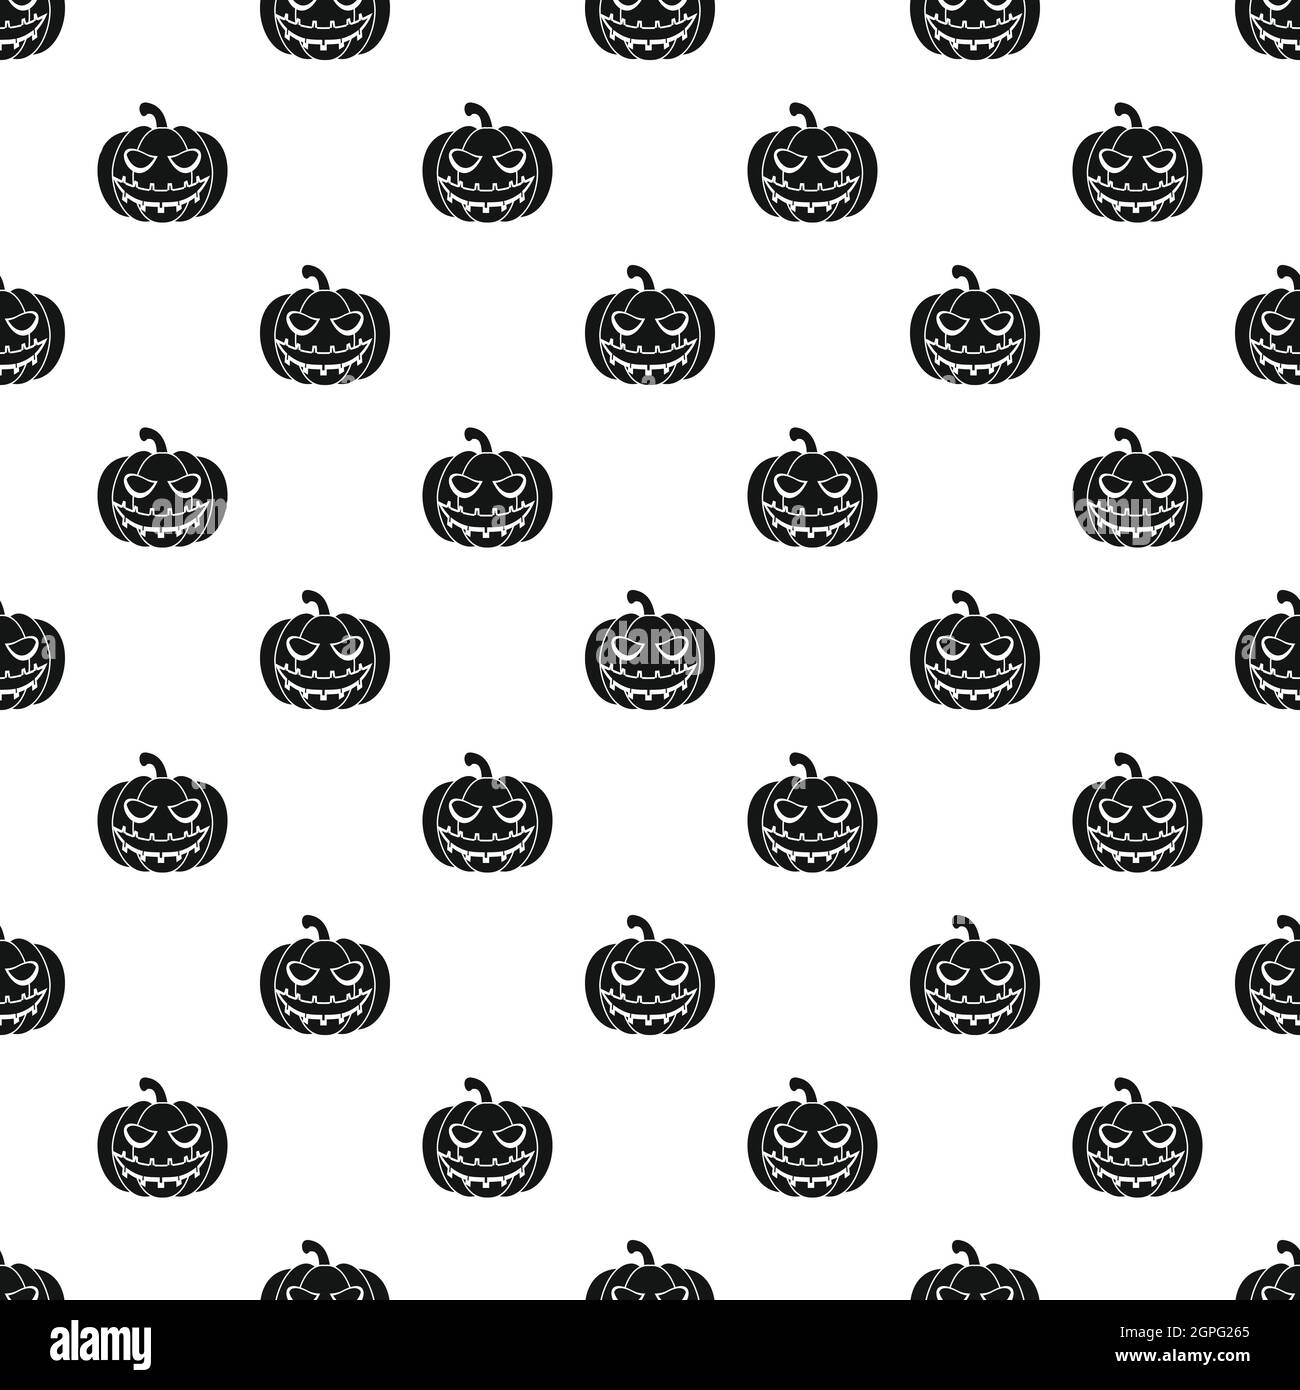 Halloween pumpkin pattern, simple style Stock Vector